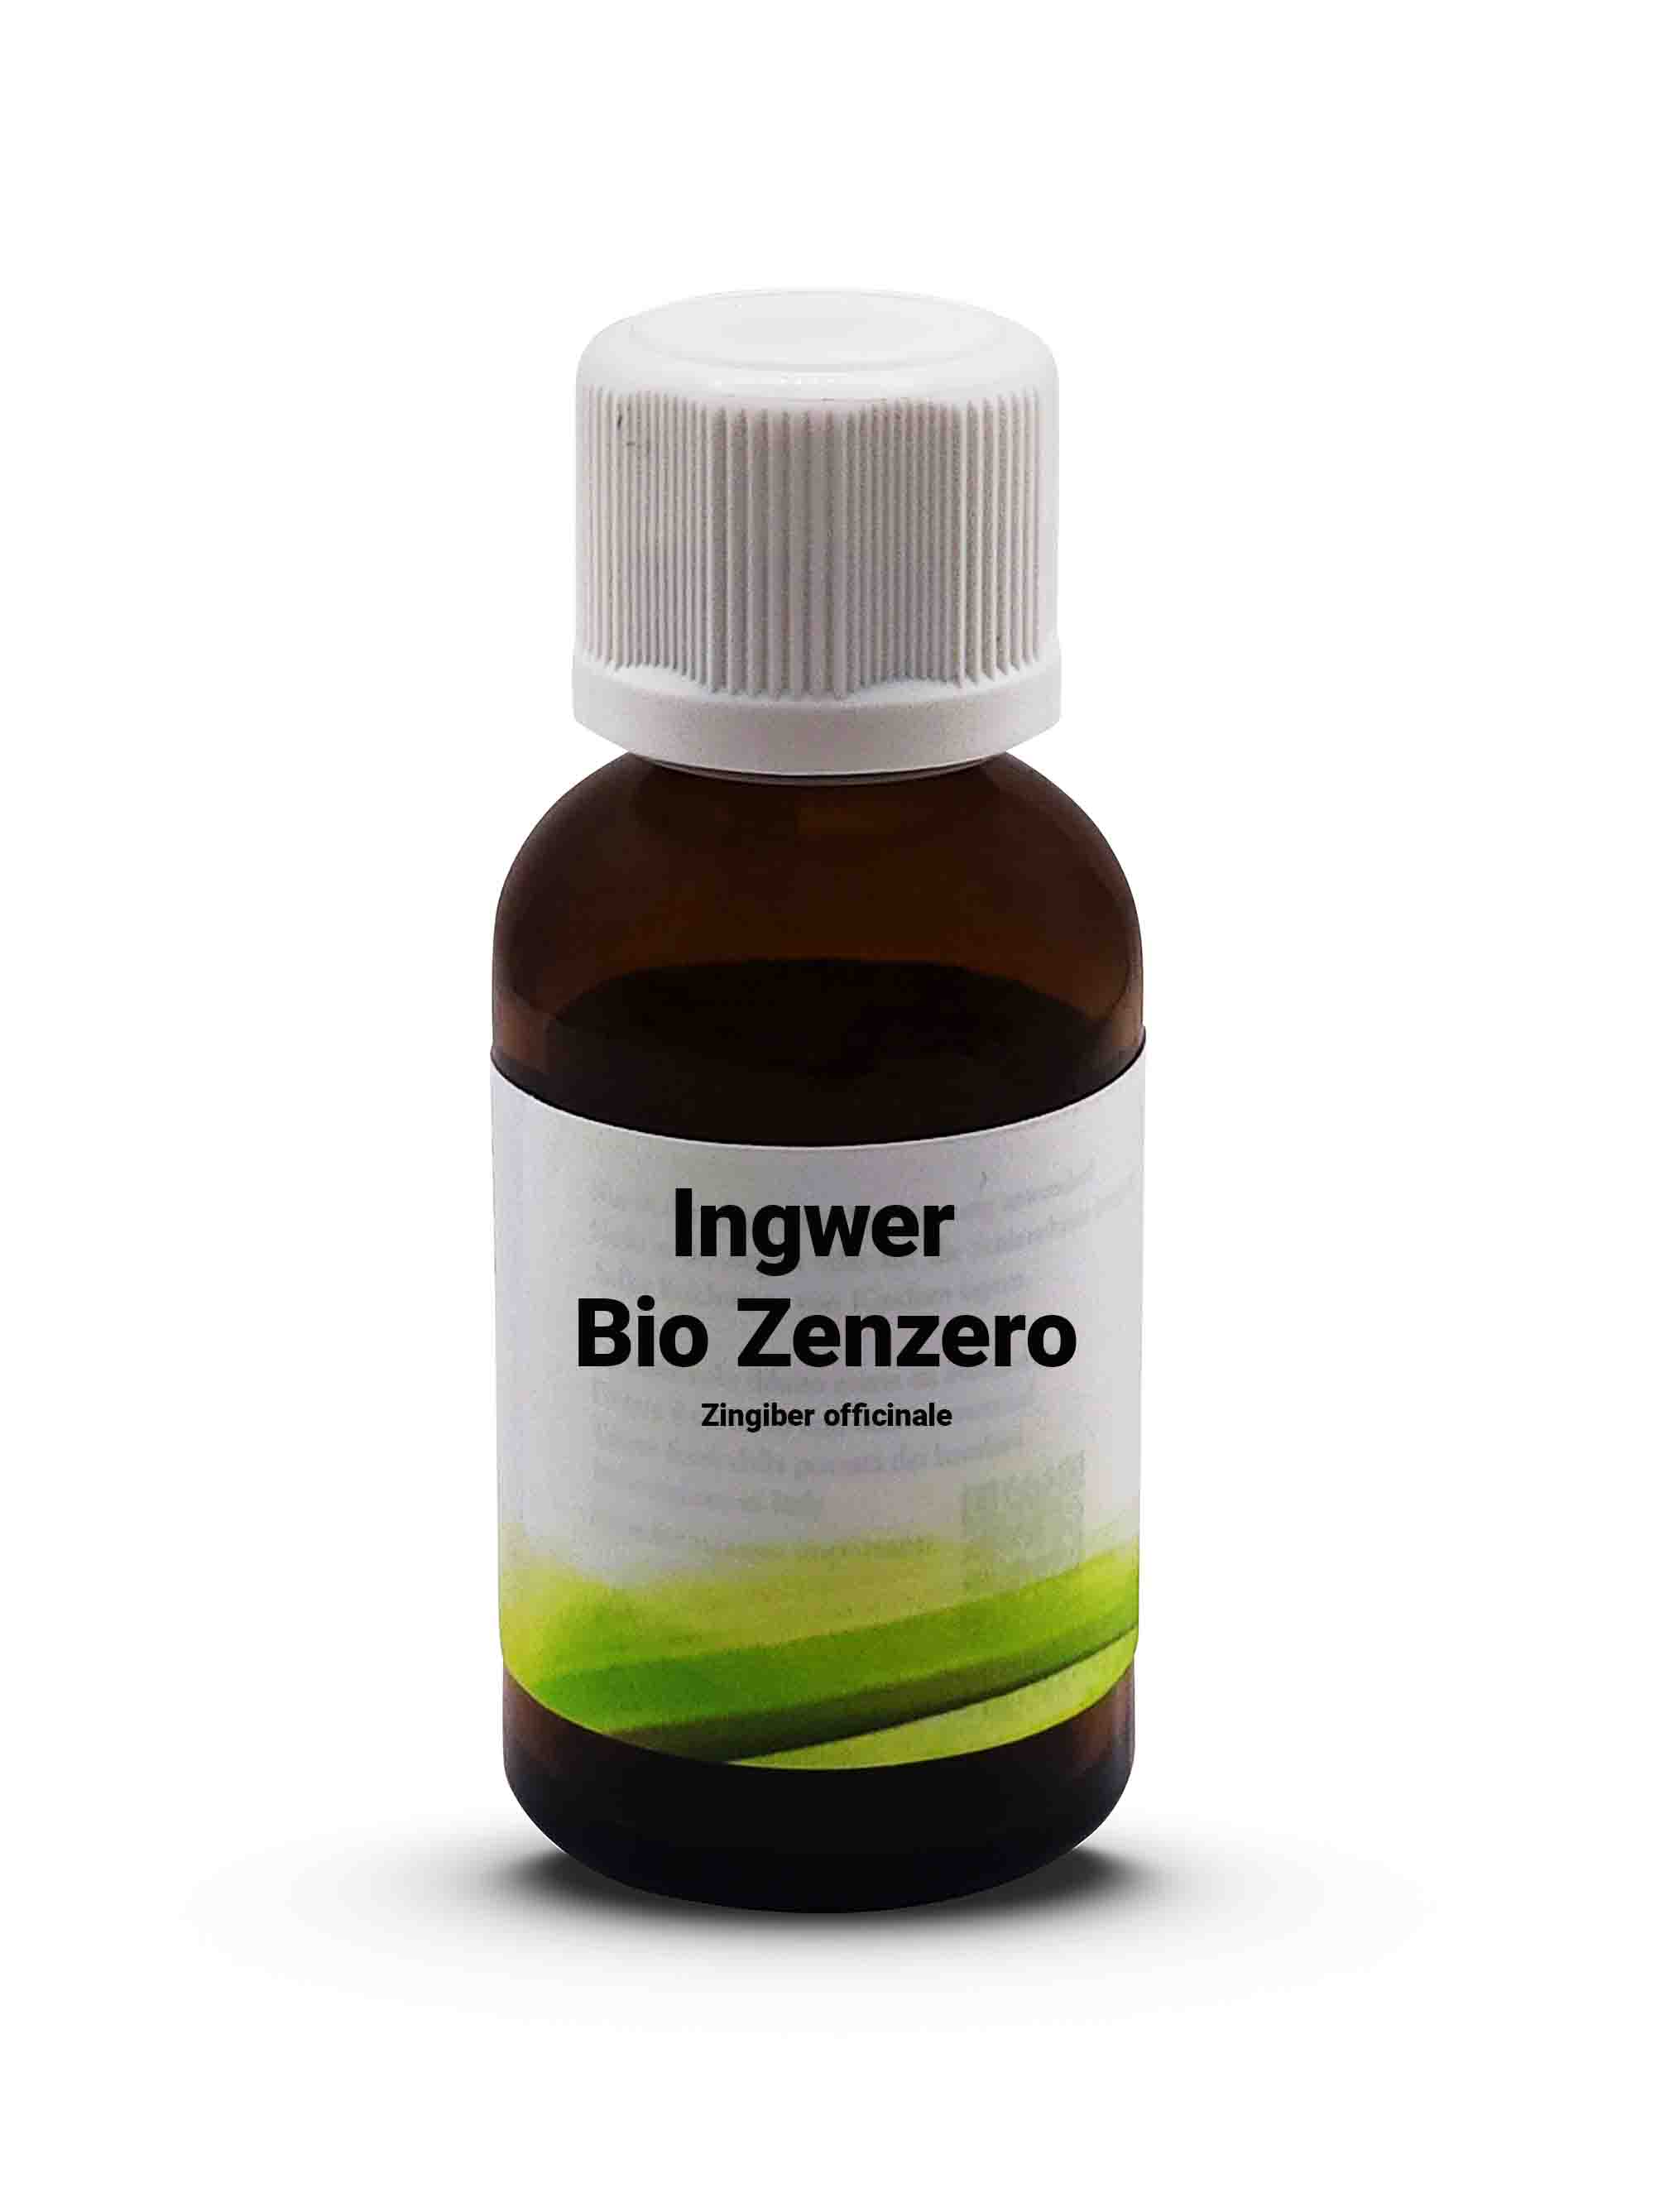 Ingwer Zenzero Bio Zingiber officinale 30 ml